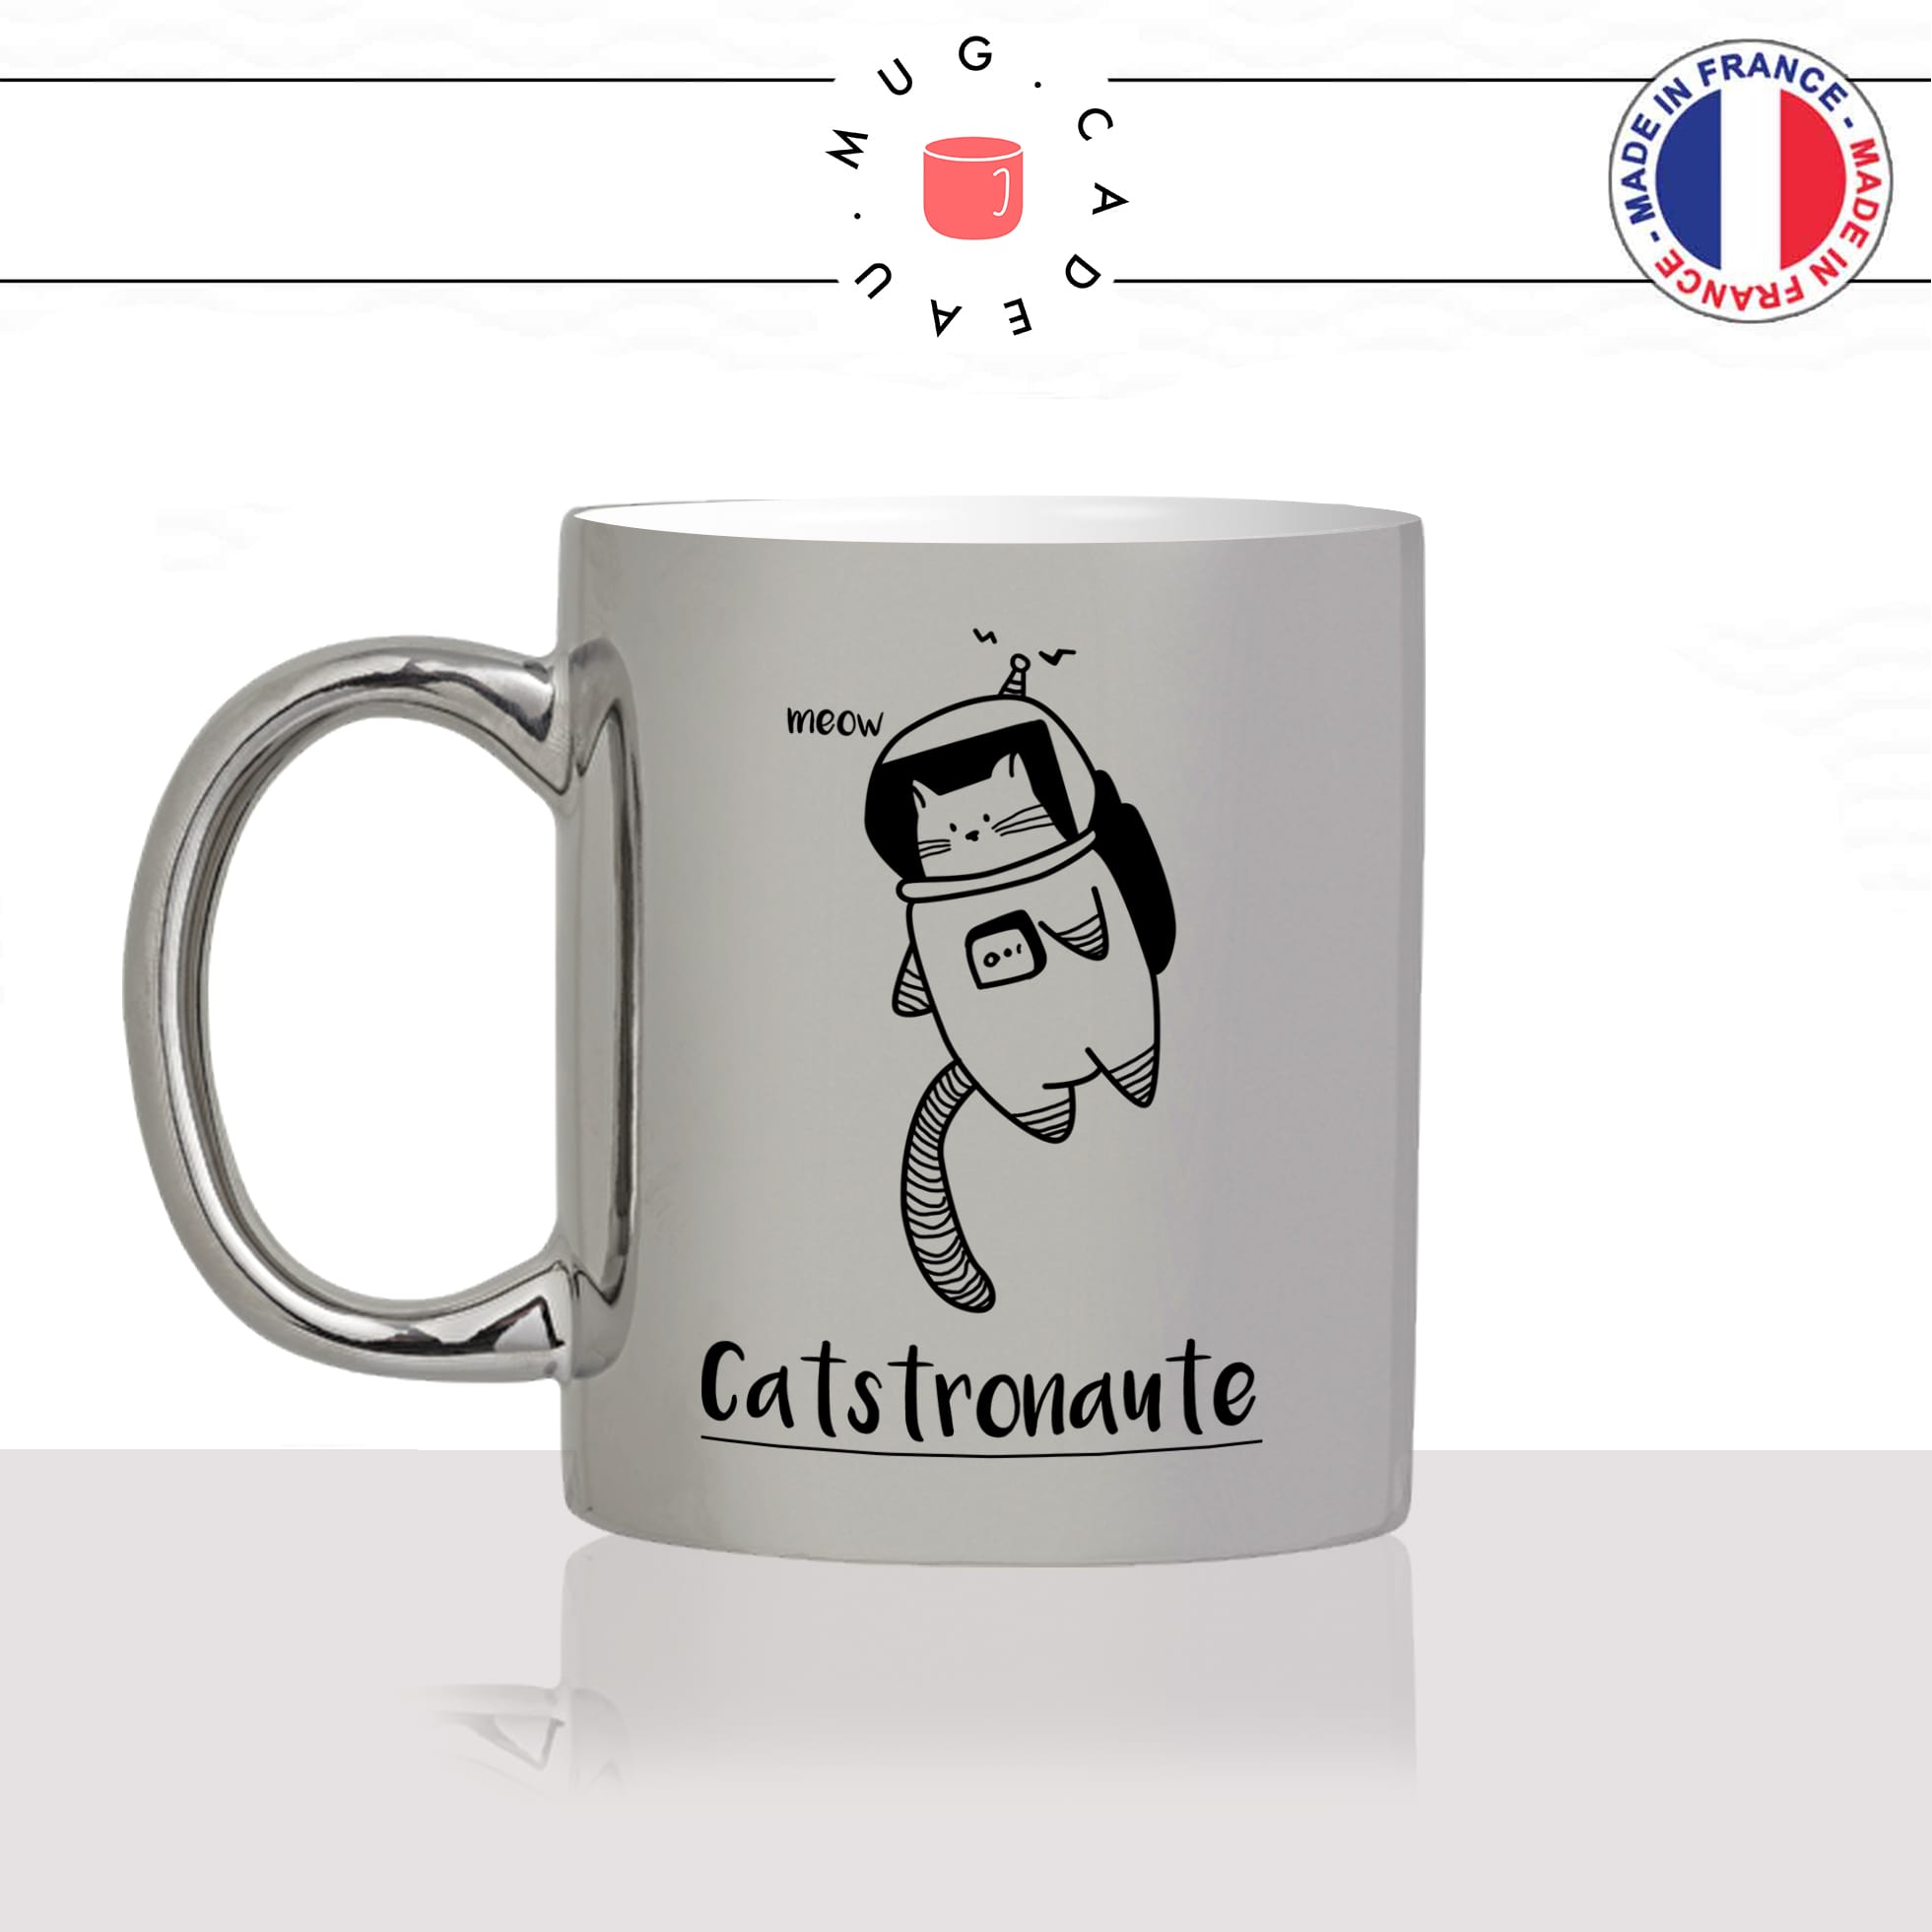 mug-tasse-argenté-silver-astronaute-espace-nasa-chats-mignon-animal-chaton-dessin-noir-fun-café-thé-idée-cadeau-original-personnalisable-min